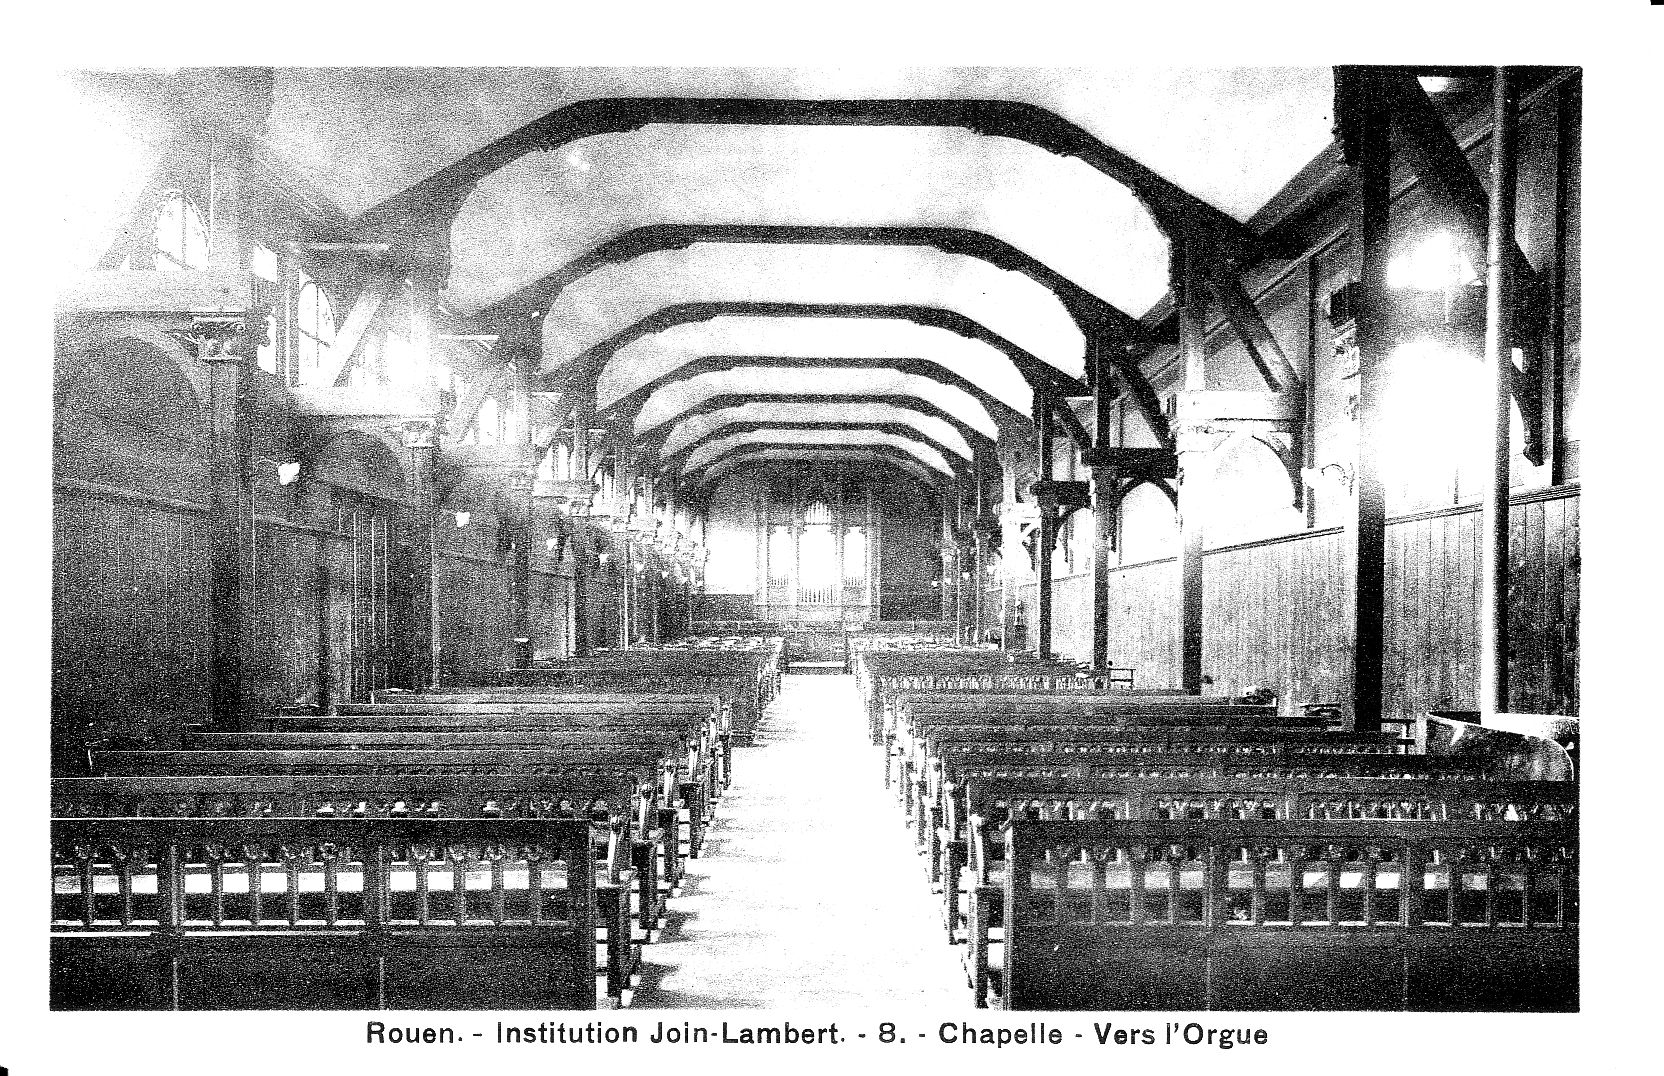 La Chapelle - Vers l'orgue